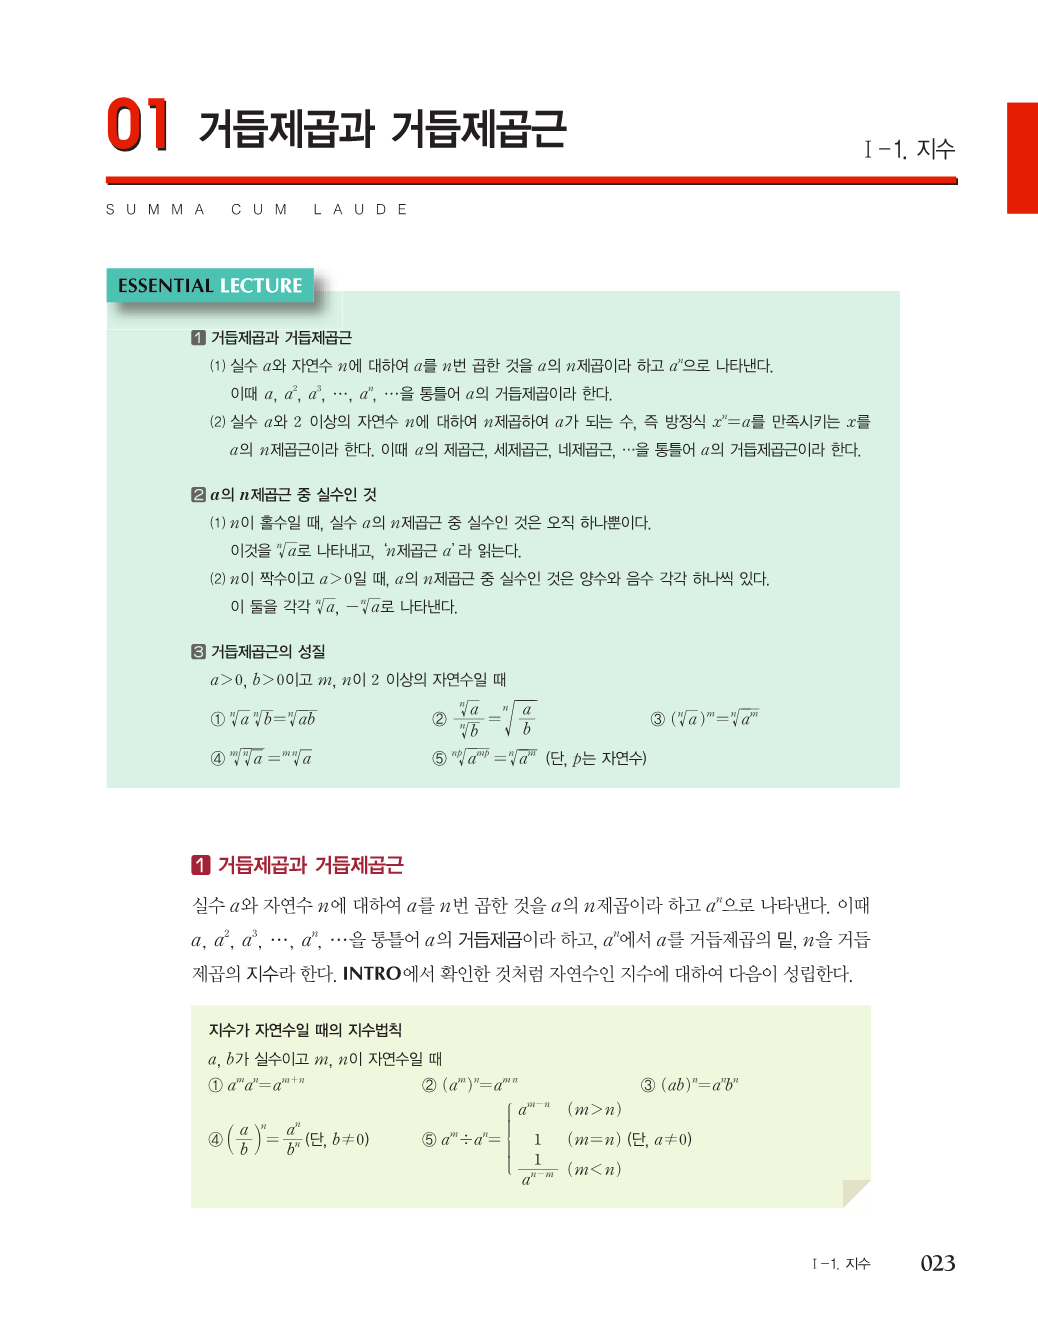 미리보기_숨마쿰라우데_개념기본서_수학117.png